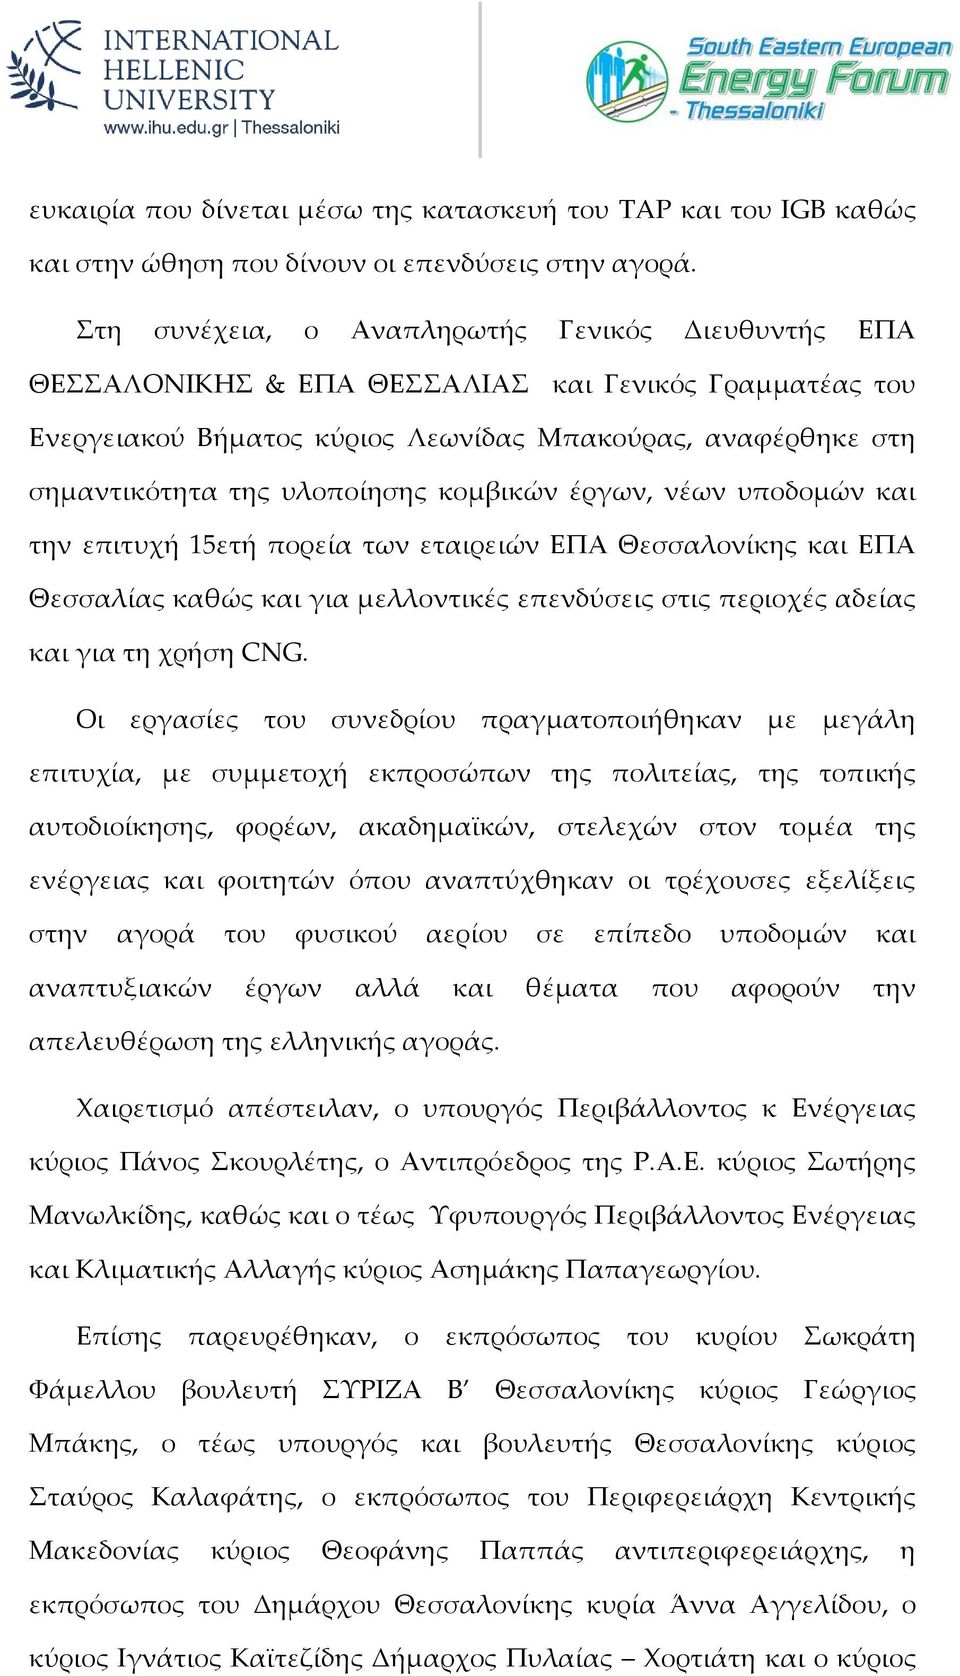 κομβικών έργων, νέων υποδομών και την επιτυχή 15ετή πορεία των εταιρειών ΕΠΑ Θεσσαλονίκης και ΕΠΑ Θεσσαλίας καθώς και για μελλοντικές επενδύσεις στις περιοχές αδείας και για τη χρήση CNG.